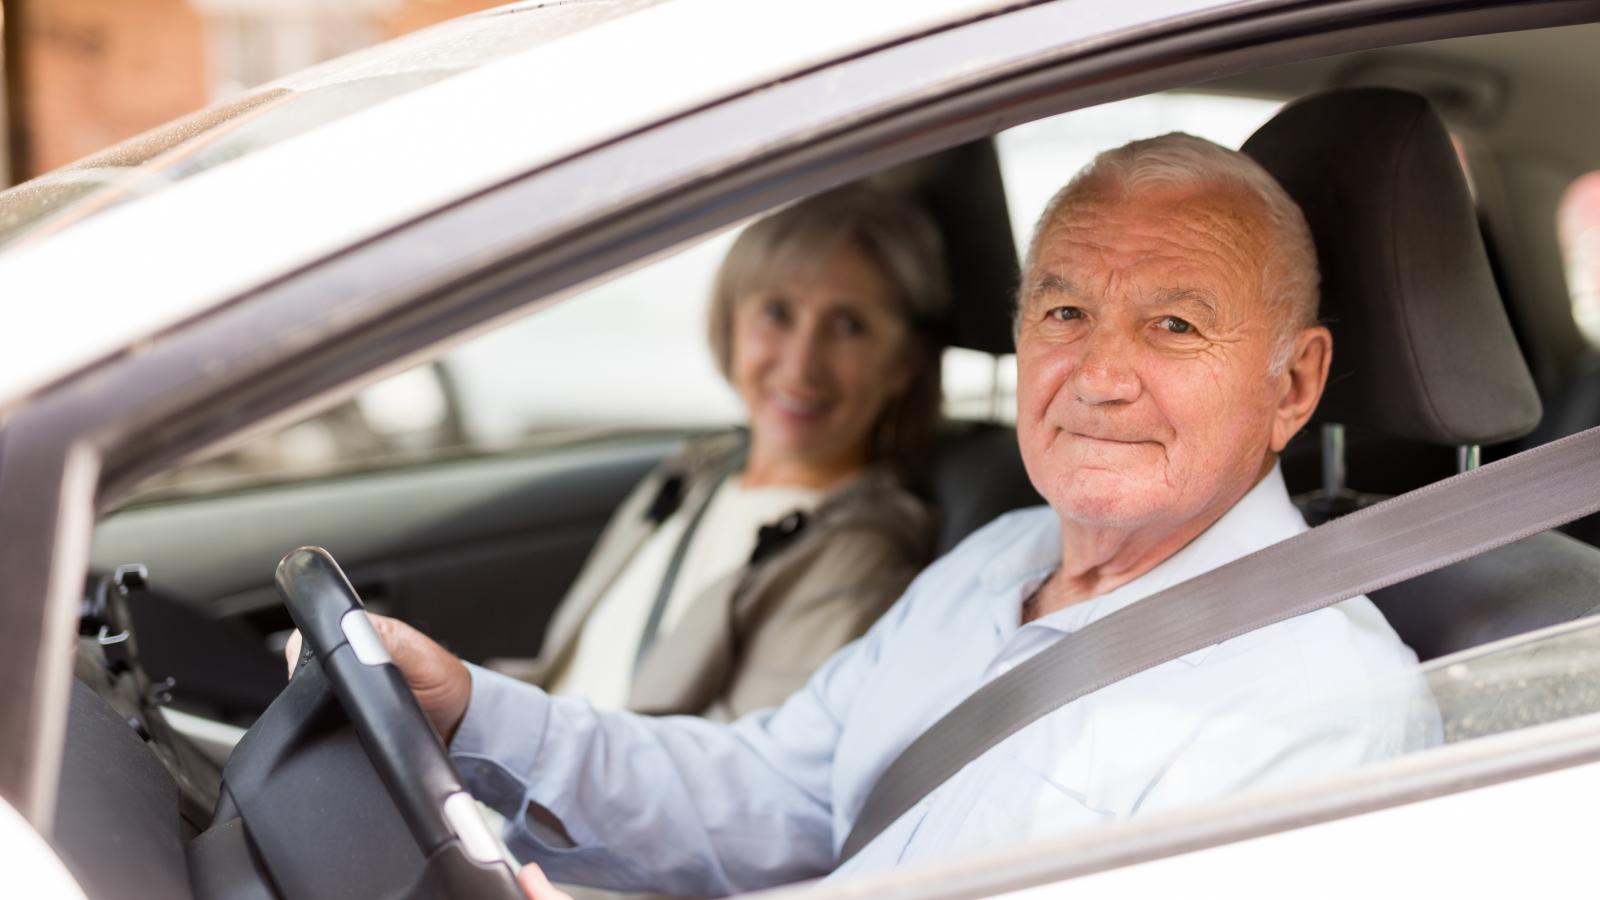 στα θρανία επιστρέφουν οι 65χρονοι -γιατί θα πρέπει να περνούν από αυστηρότερες εξετάσεις οδήγησης